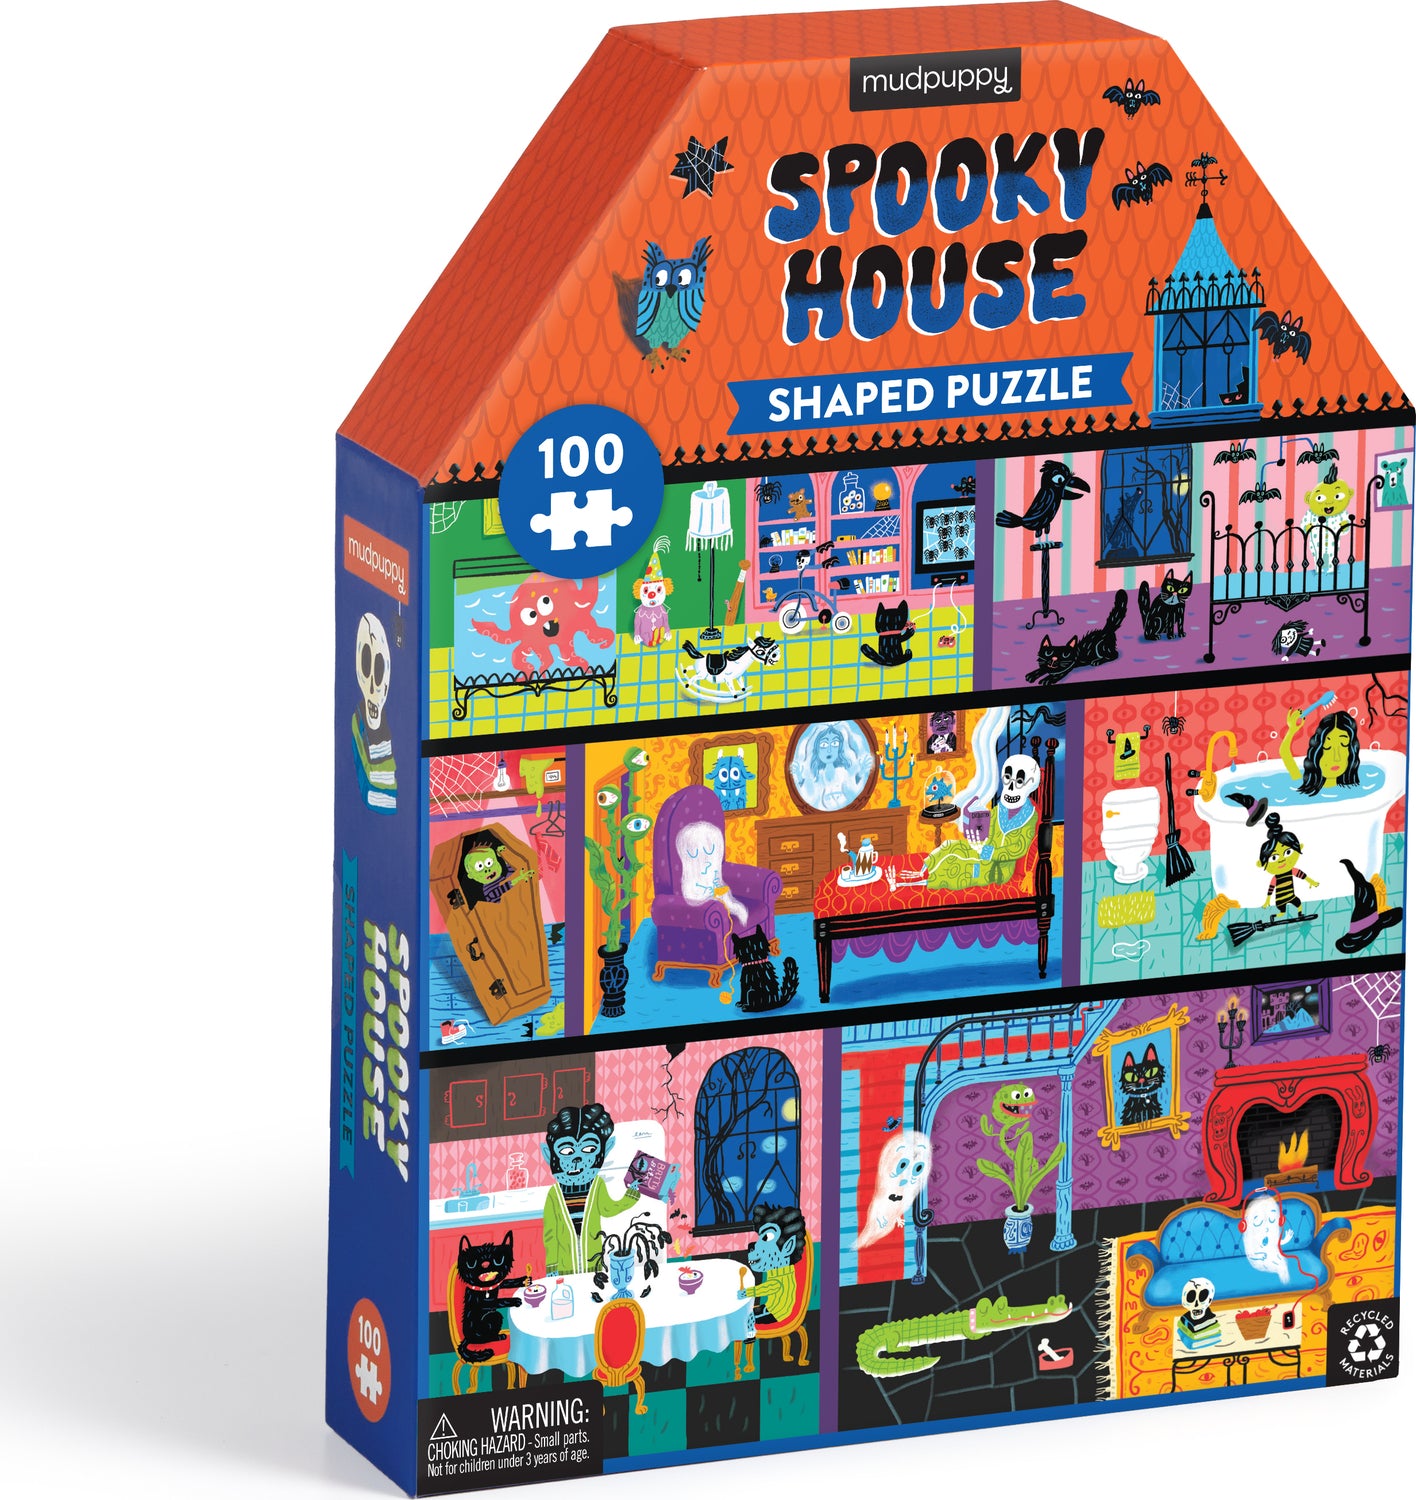 House Shaped Spooky House